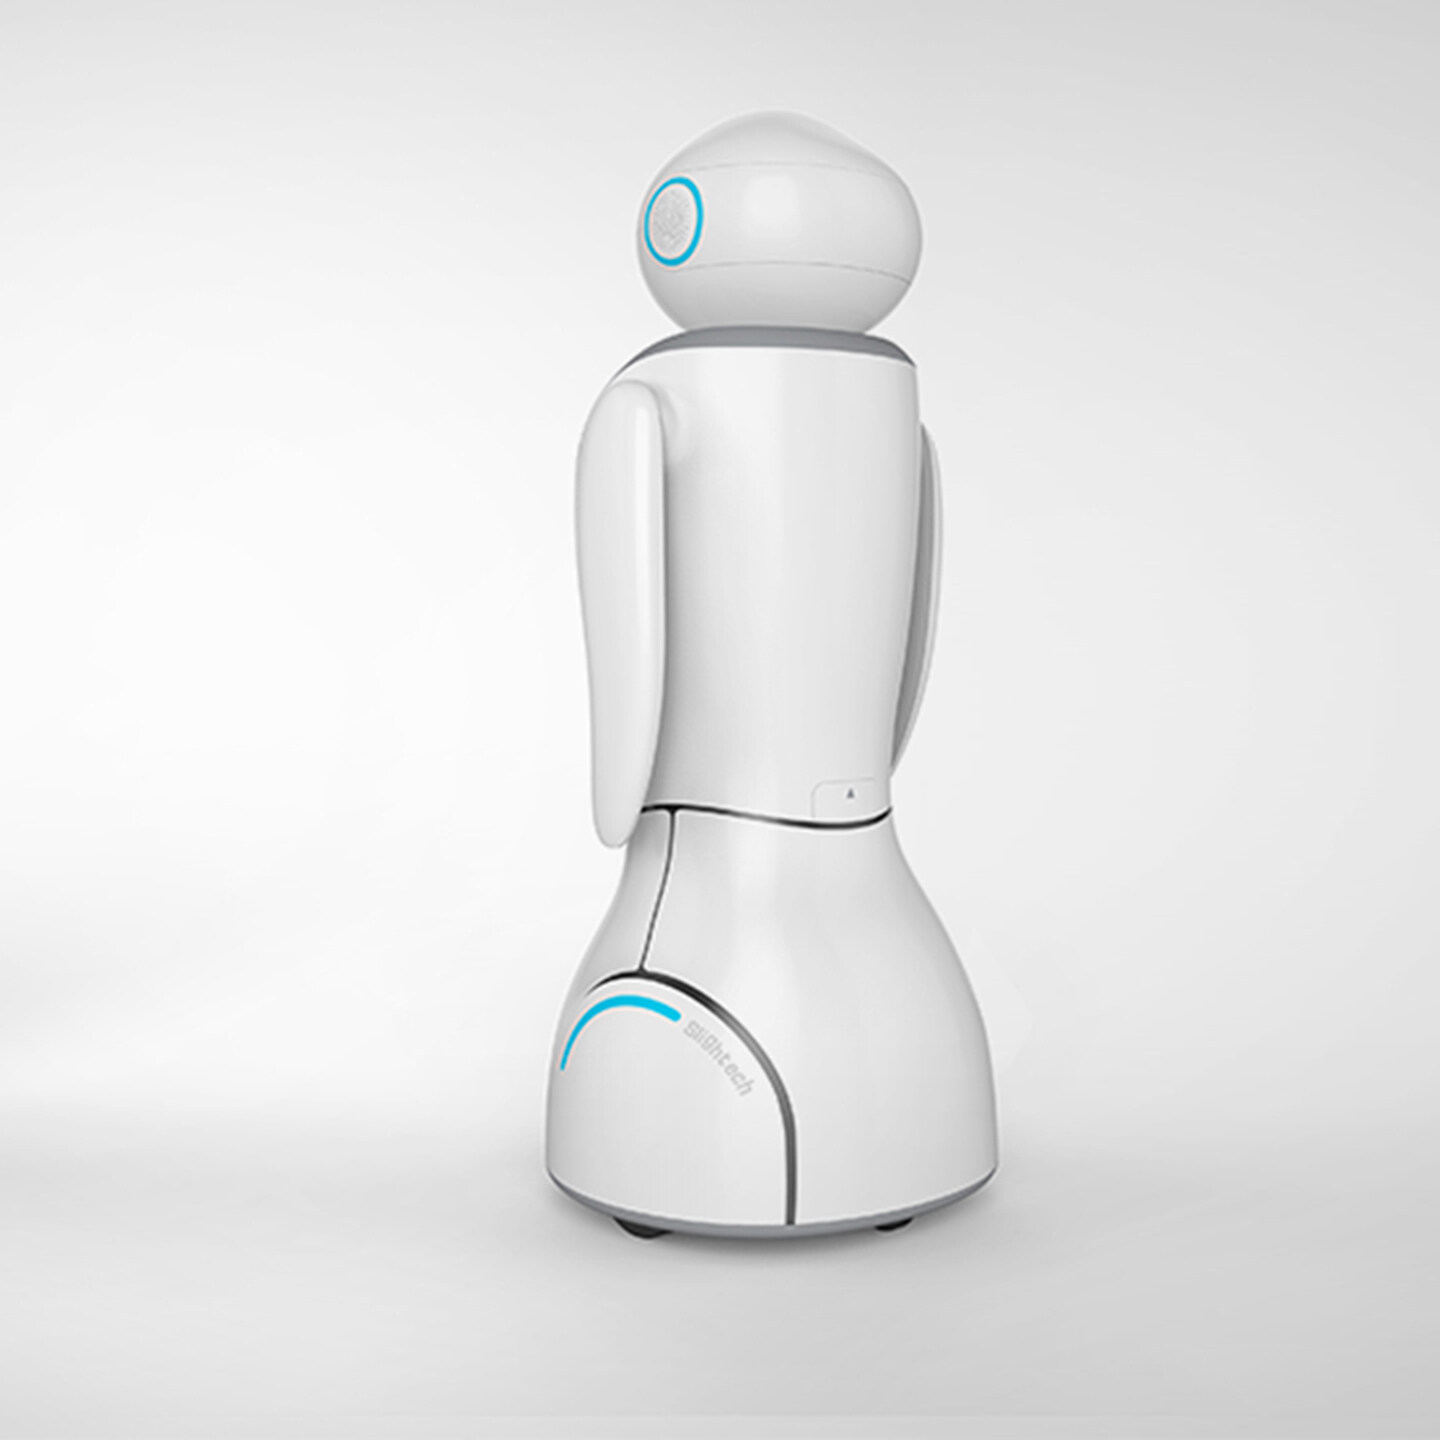 家庭服务机器人设计-SDENO小觅机器人